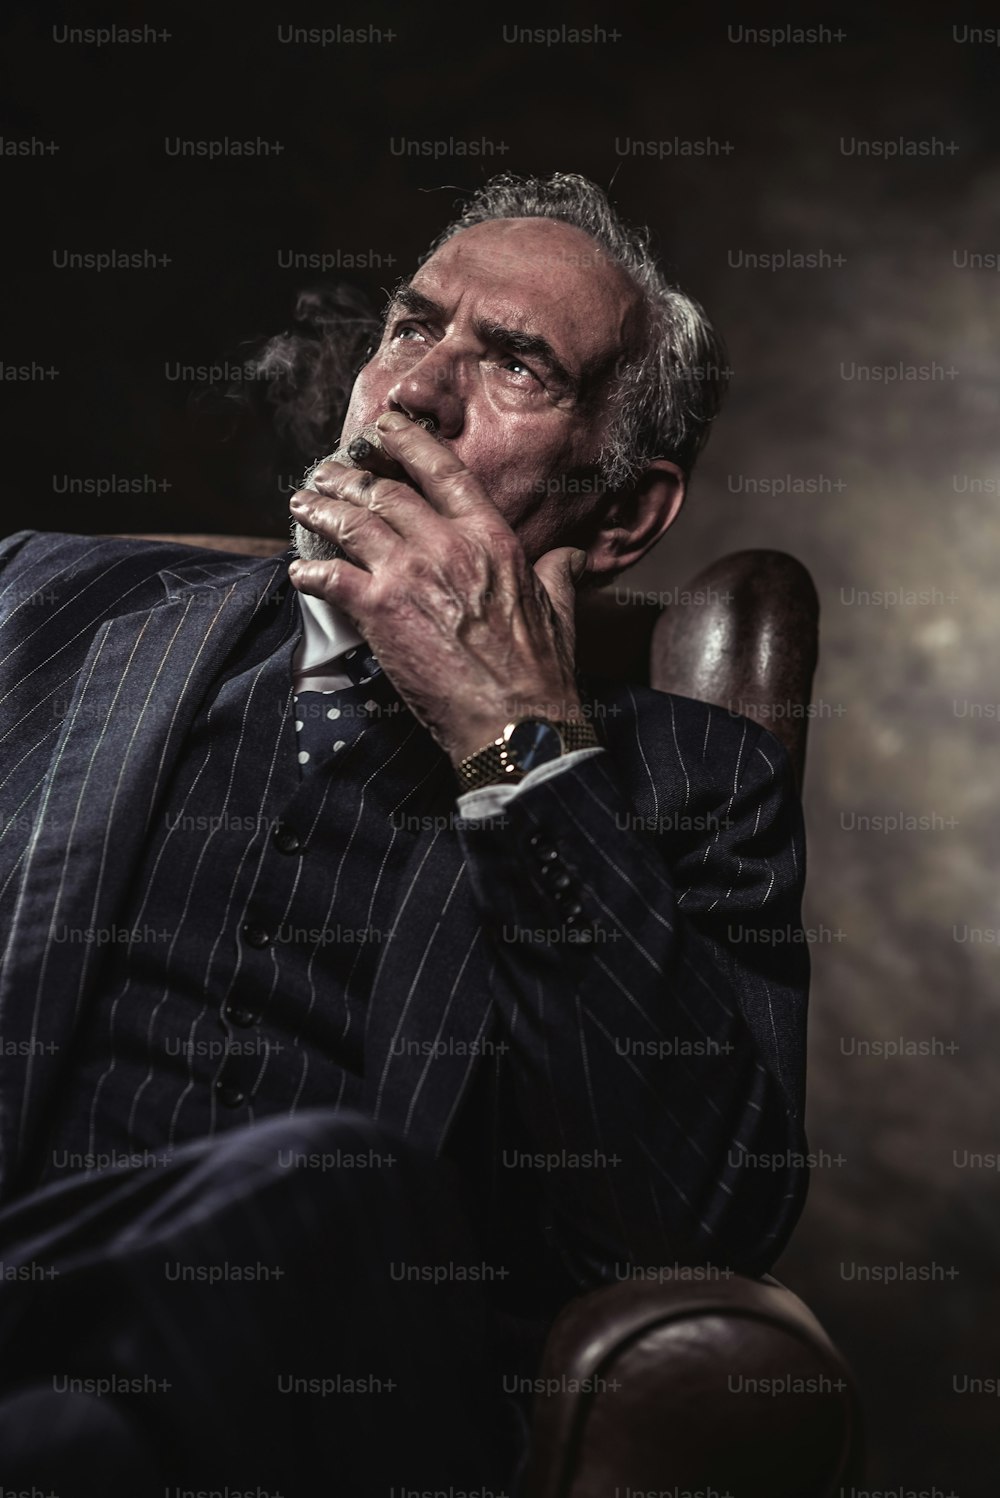 Sur la chaise, il est caractéristique de l’homme d’affaires senior. Fumer un cigare. Cheveux gris et barbe portant costume rayé bleu et cravate. Contre mur brun.